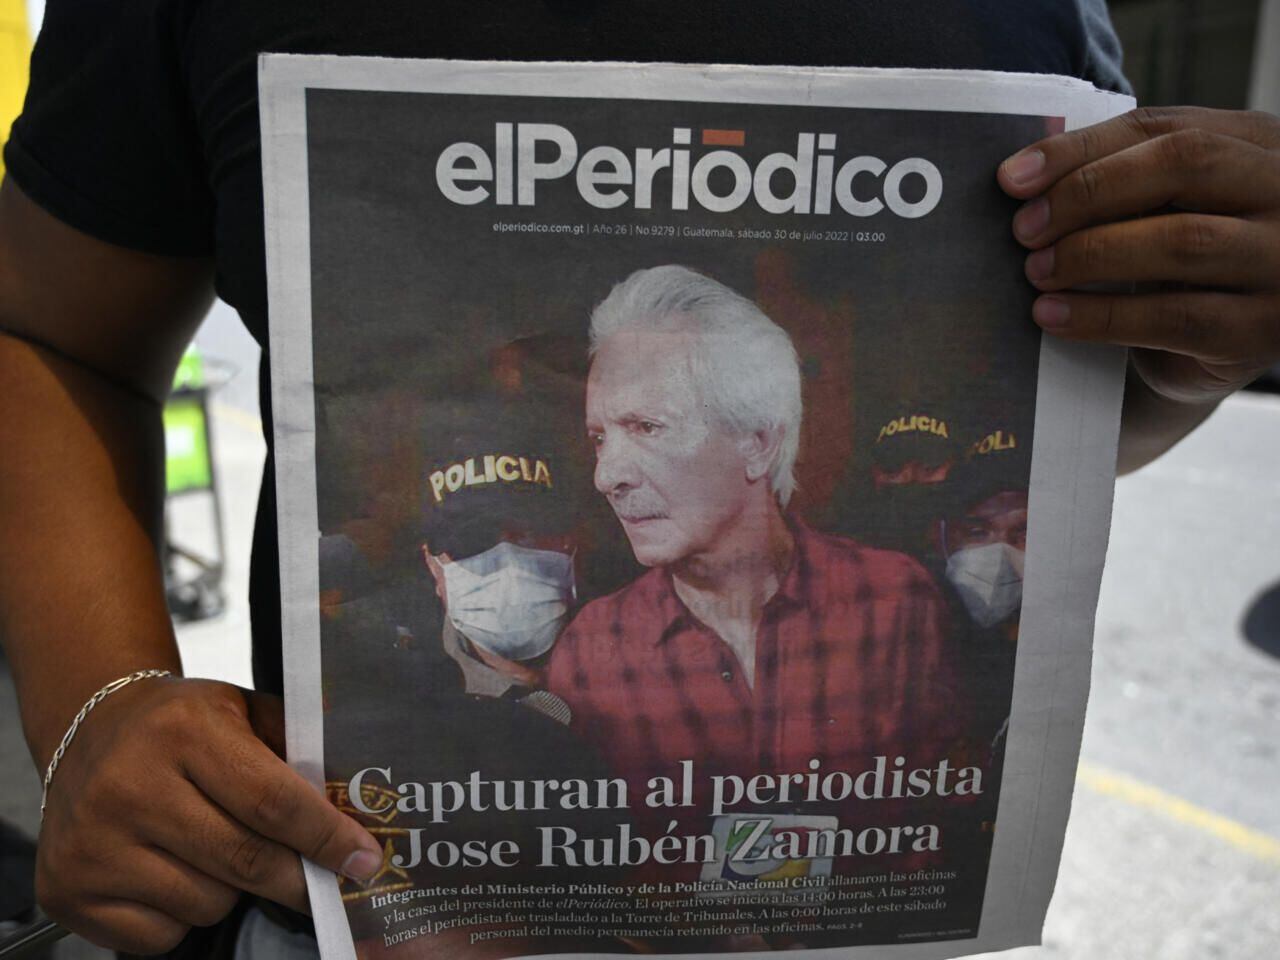 Cierra periódico en Guatemala tras persecución penal contra su dueño